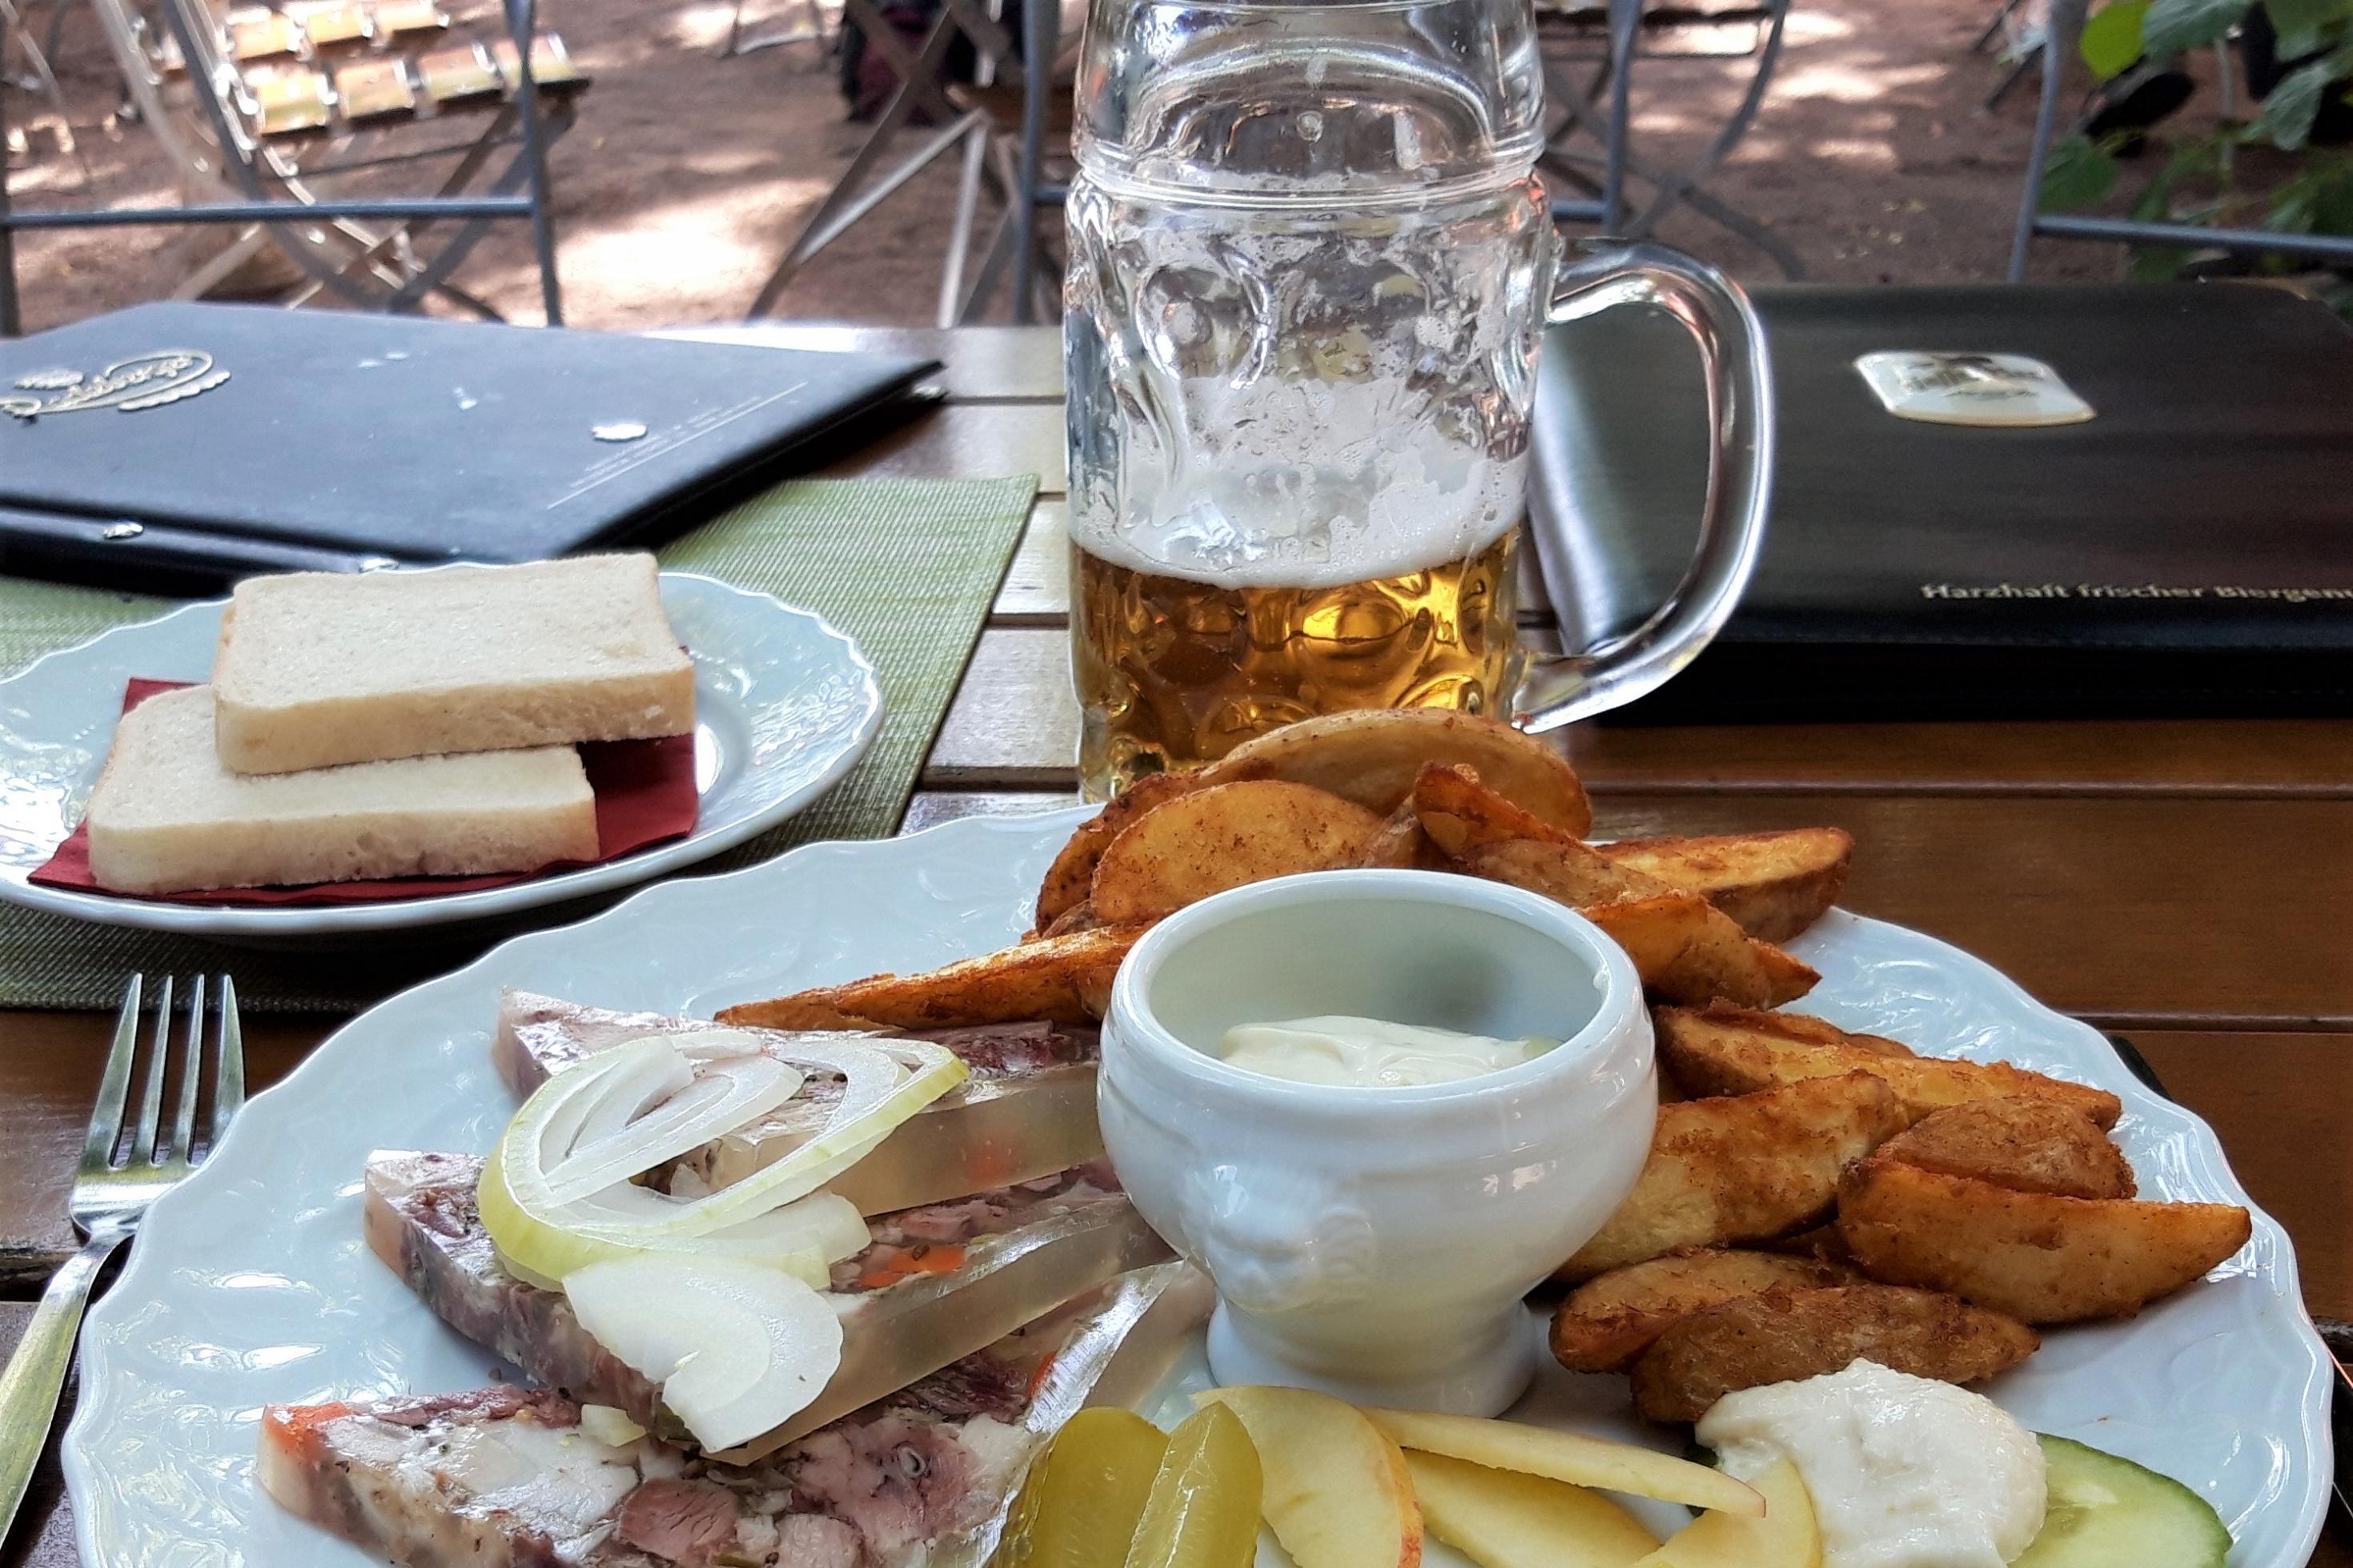 Ein Teller mit Kartoffeln, Sülze, Tellergarnitur und einem halb getrunkenen Bierglas.